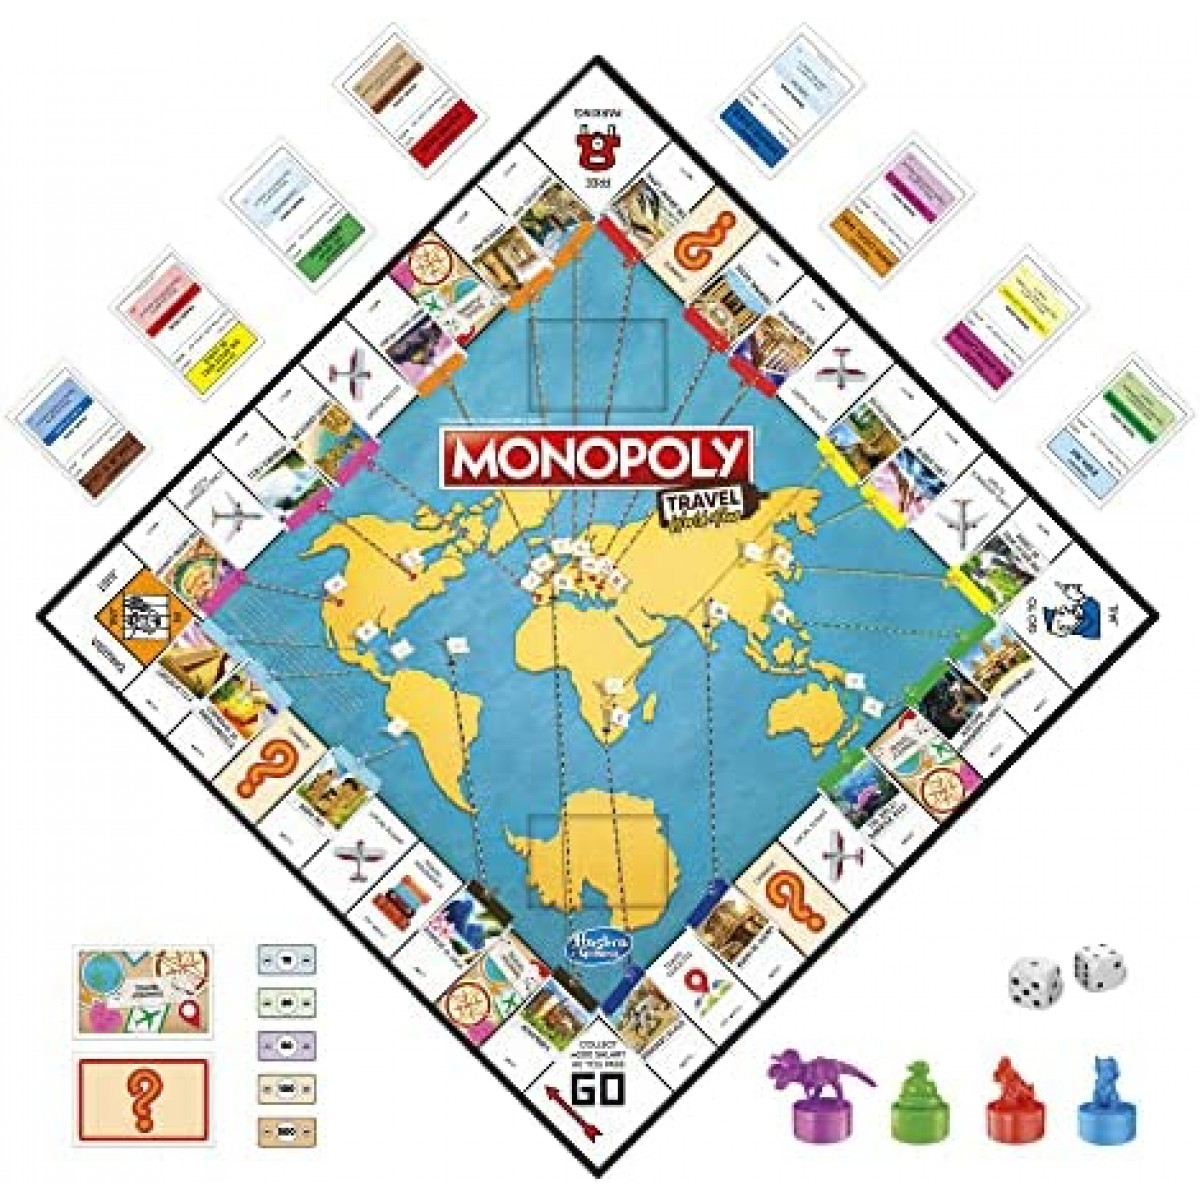 monopoly world tour rewards list